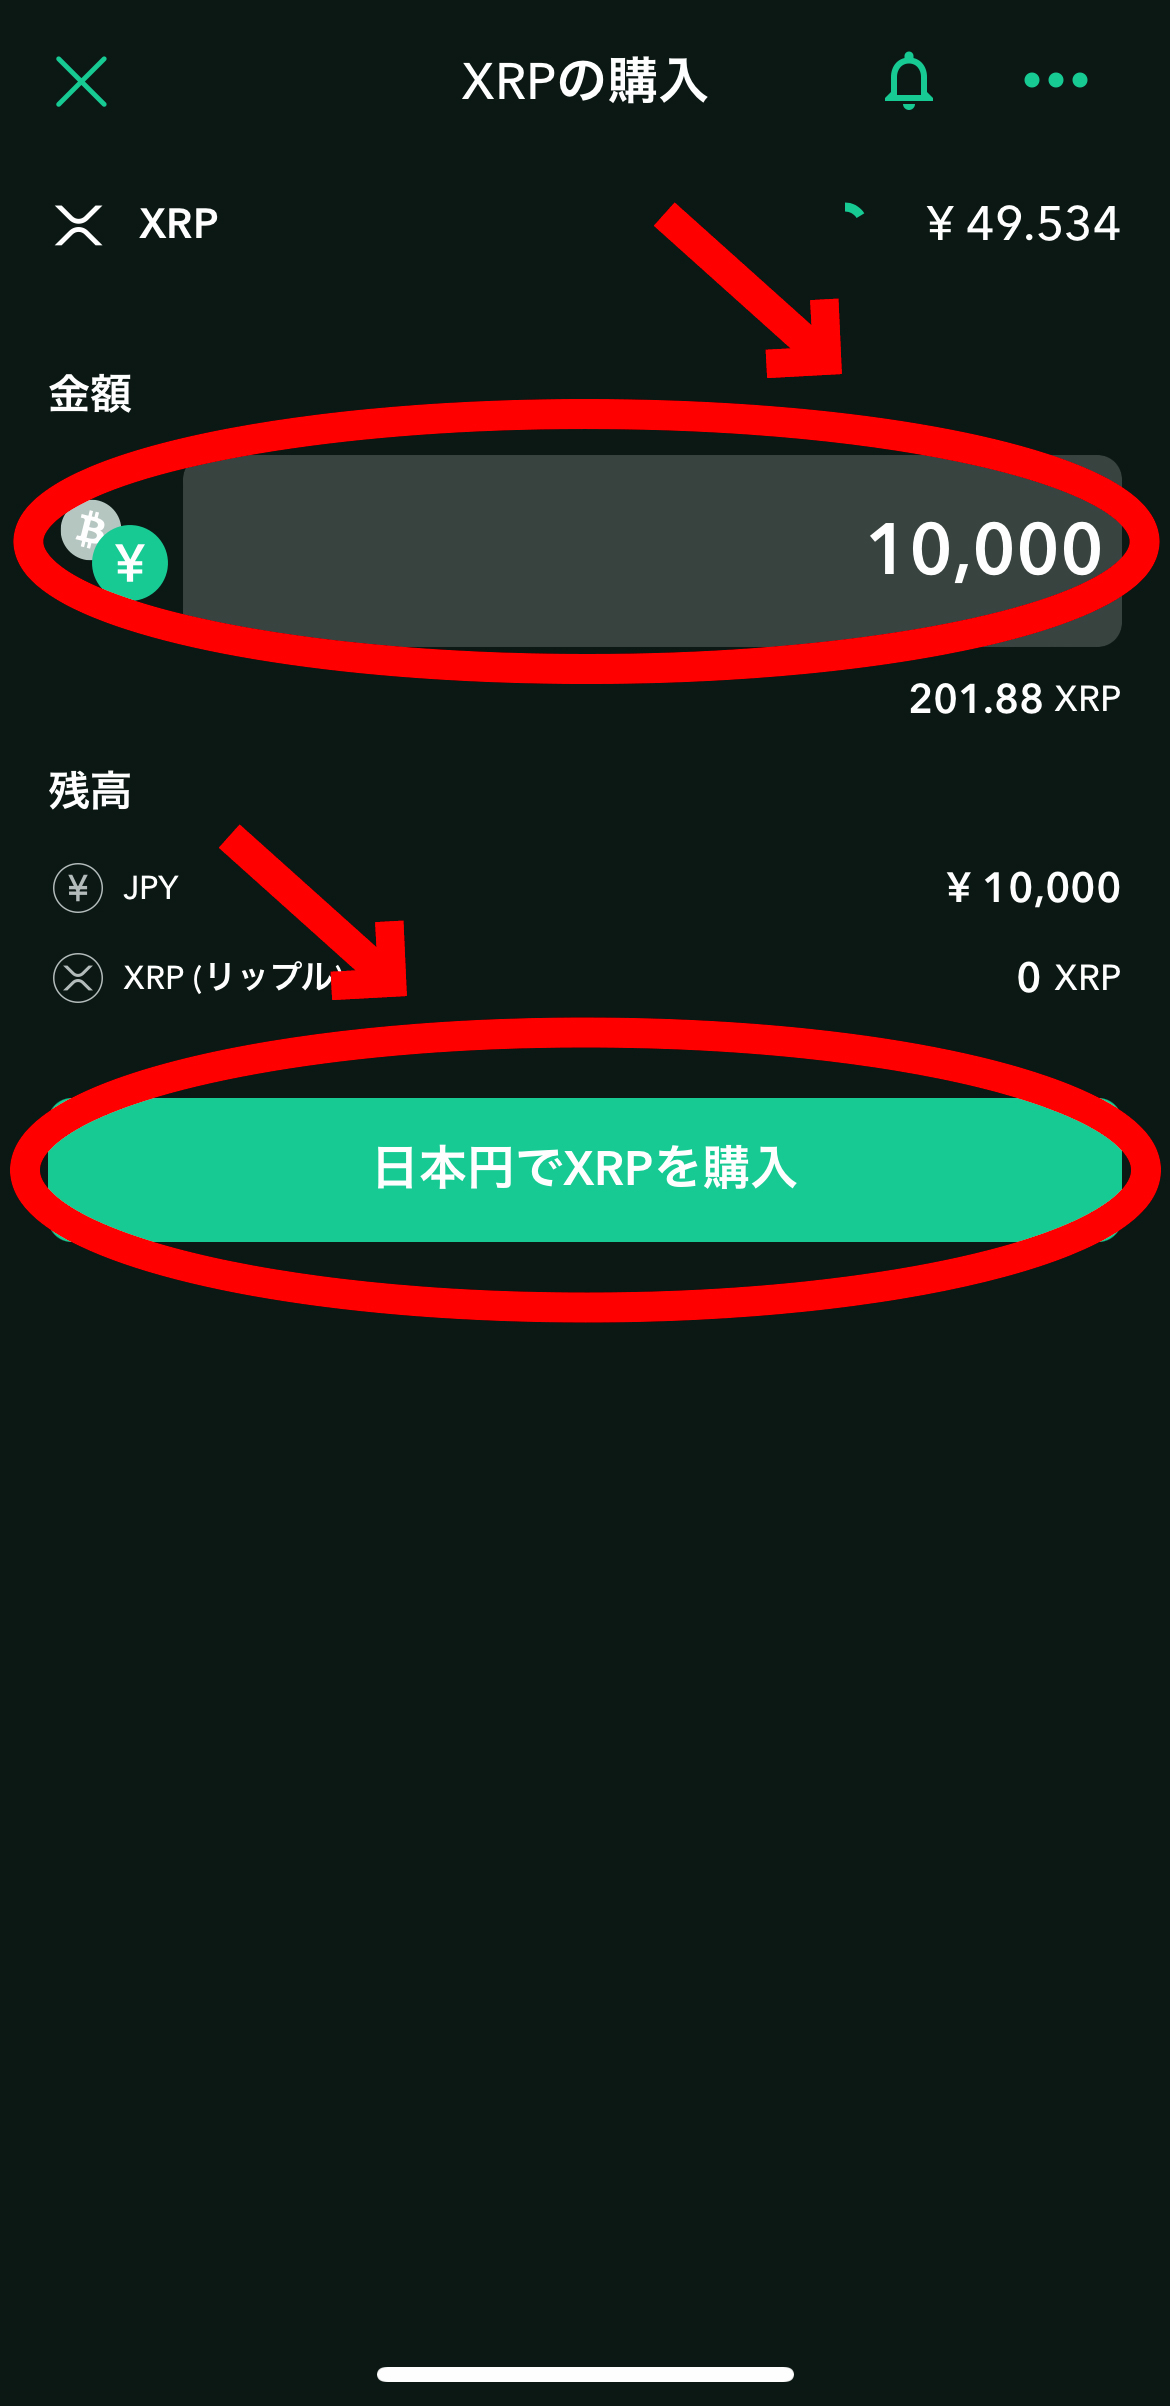 【超初心者向け】仮想通貨の始め方【仮想通貨購入まで解説】日本円でXRPを購入をクリックします。